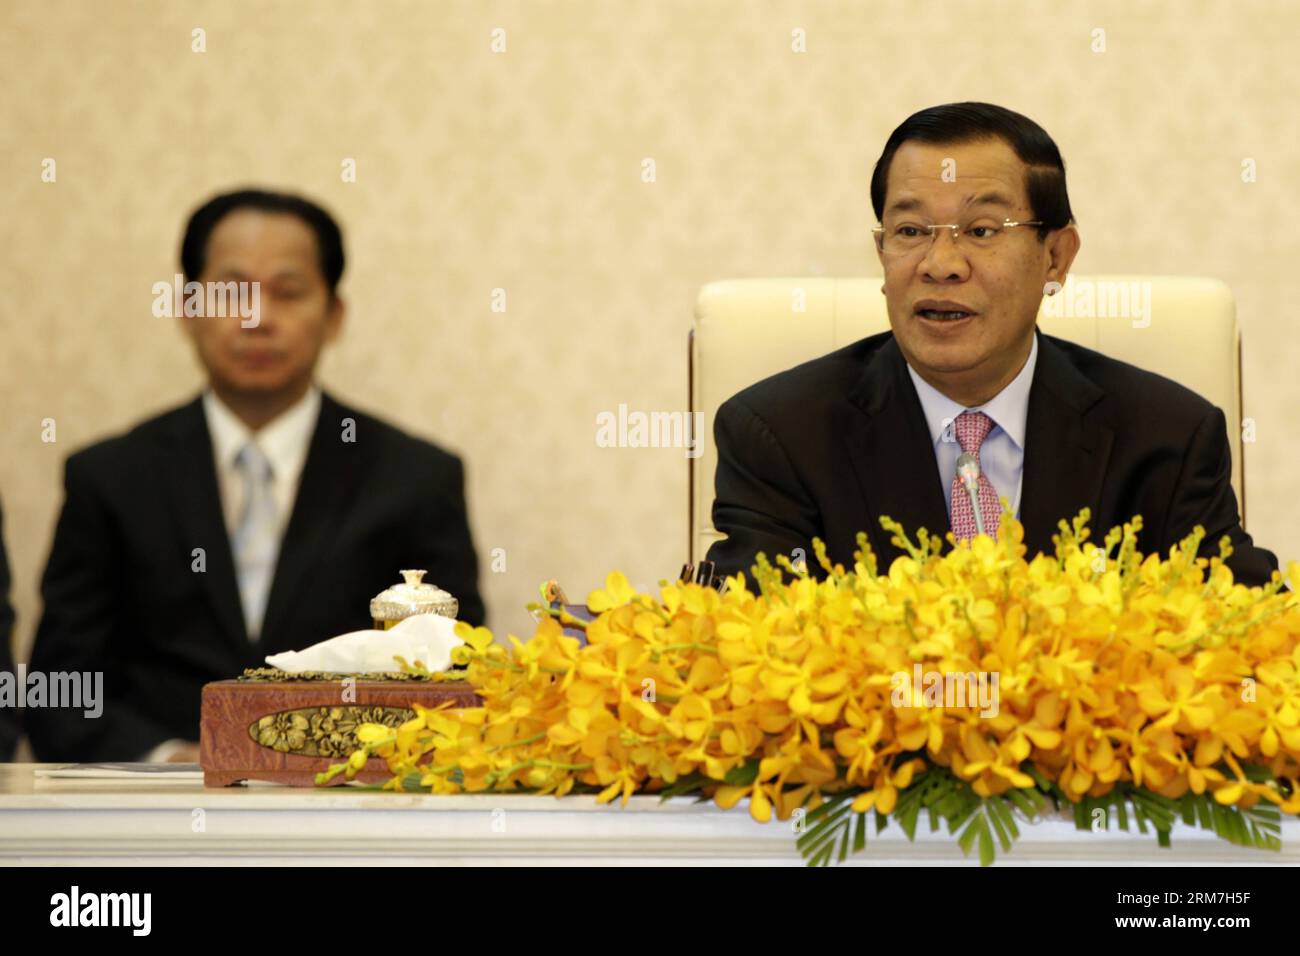 (140304) -- PHNOM PENH, 4 marzo 2014 (Xinhua) -- il primo ministro cambogiano Hun Sen (R) partecipa al 17° Forum governativo-privato presso il Palazzo della Pace di Phnom Penh, Cambogia, 4 marzo 2014. Il primo ministro cambogiano Hun Sen ha ribadito martedì che il governo non avrebbe più tollerato scioperi o manifestazioni illegali guidate dall'opposizione e dai suoi sindacati allineati. (Xinhua/Phearum) CAMBOGIA-PHNOM PENH-PM-PROTESTE ILLEGALI PUBLICATIONxNOTxINxCHN Phnom Penh 4 marzo 2014 XINHUA primo ministro cambogiano HUN Sen r partecipa al 17° Forum del settore privato del governo AL Palazzo della Pace di Foto Stock